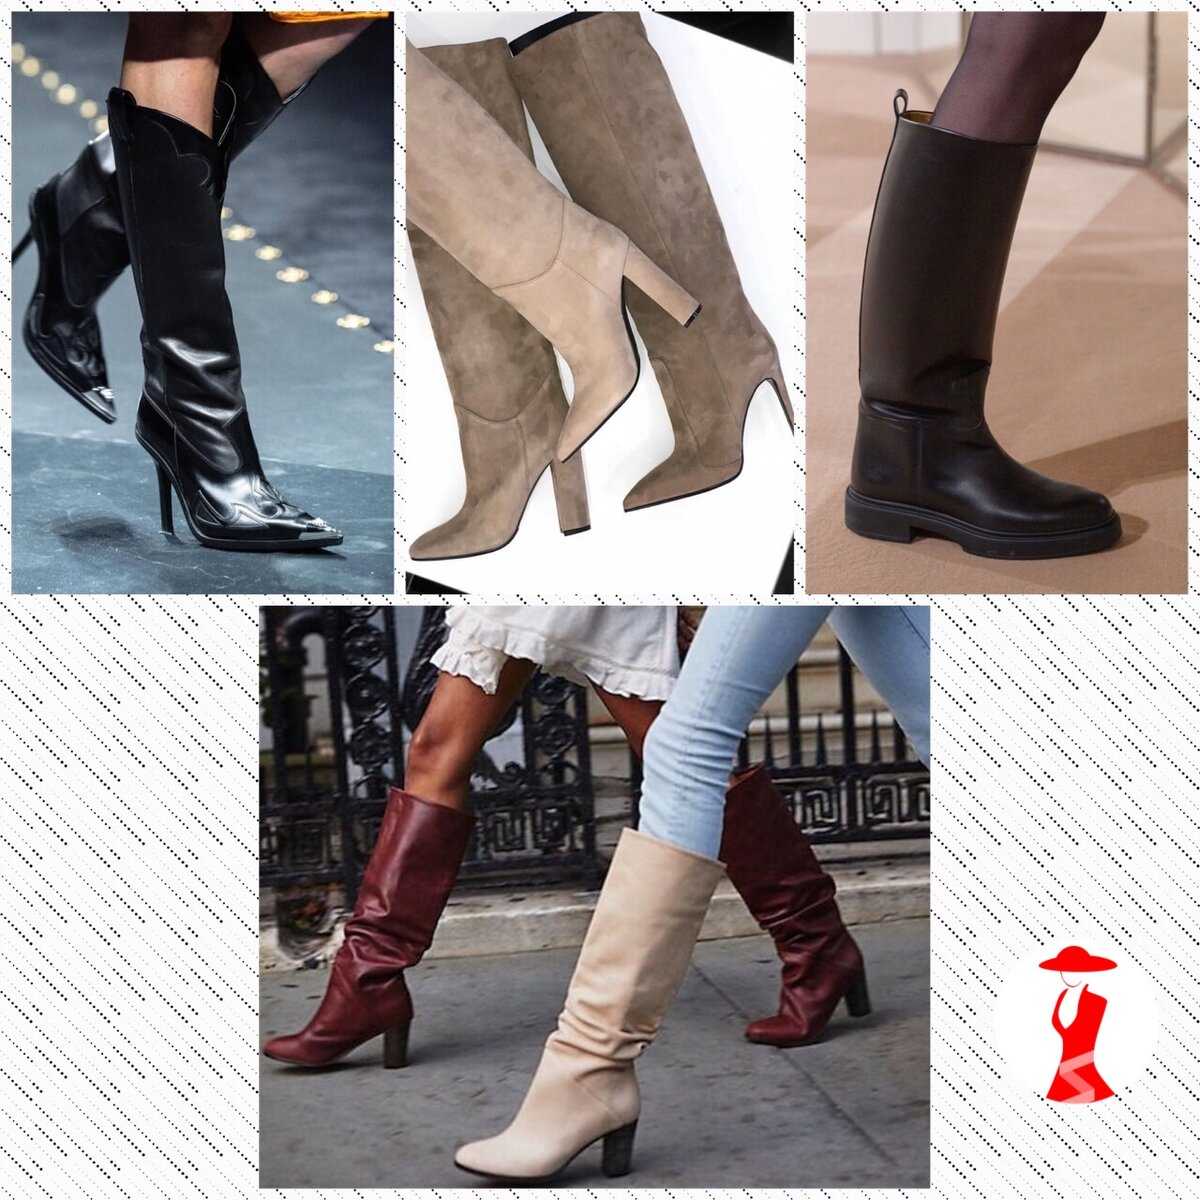 Выбор моделей женской обуви на полную ногу с высоким подъемом и популярные бренды